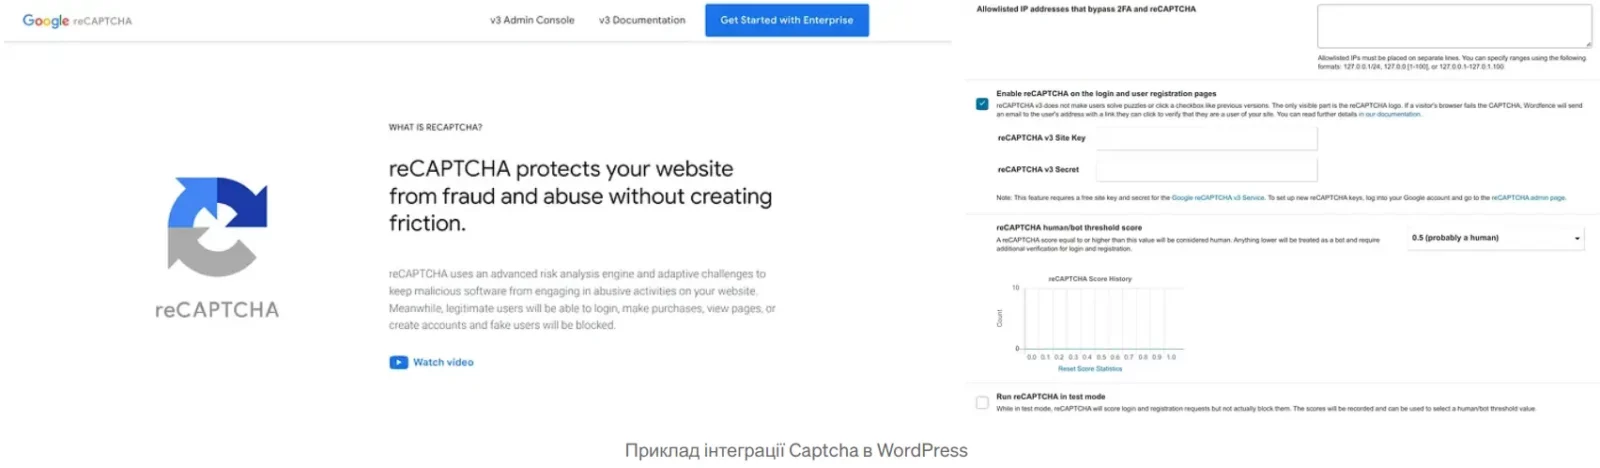 Інтеграція системи Captcha на сайті WordPress з допомогою плагіну Wordfence Security